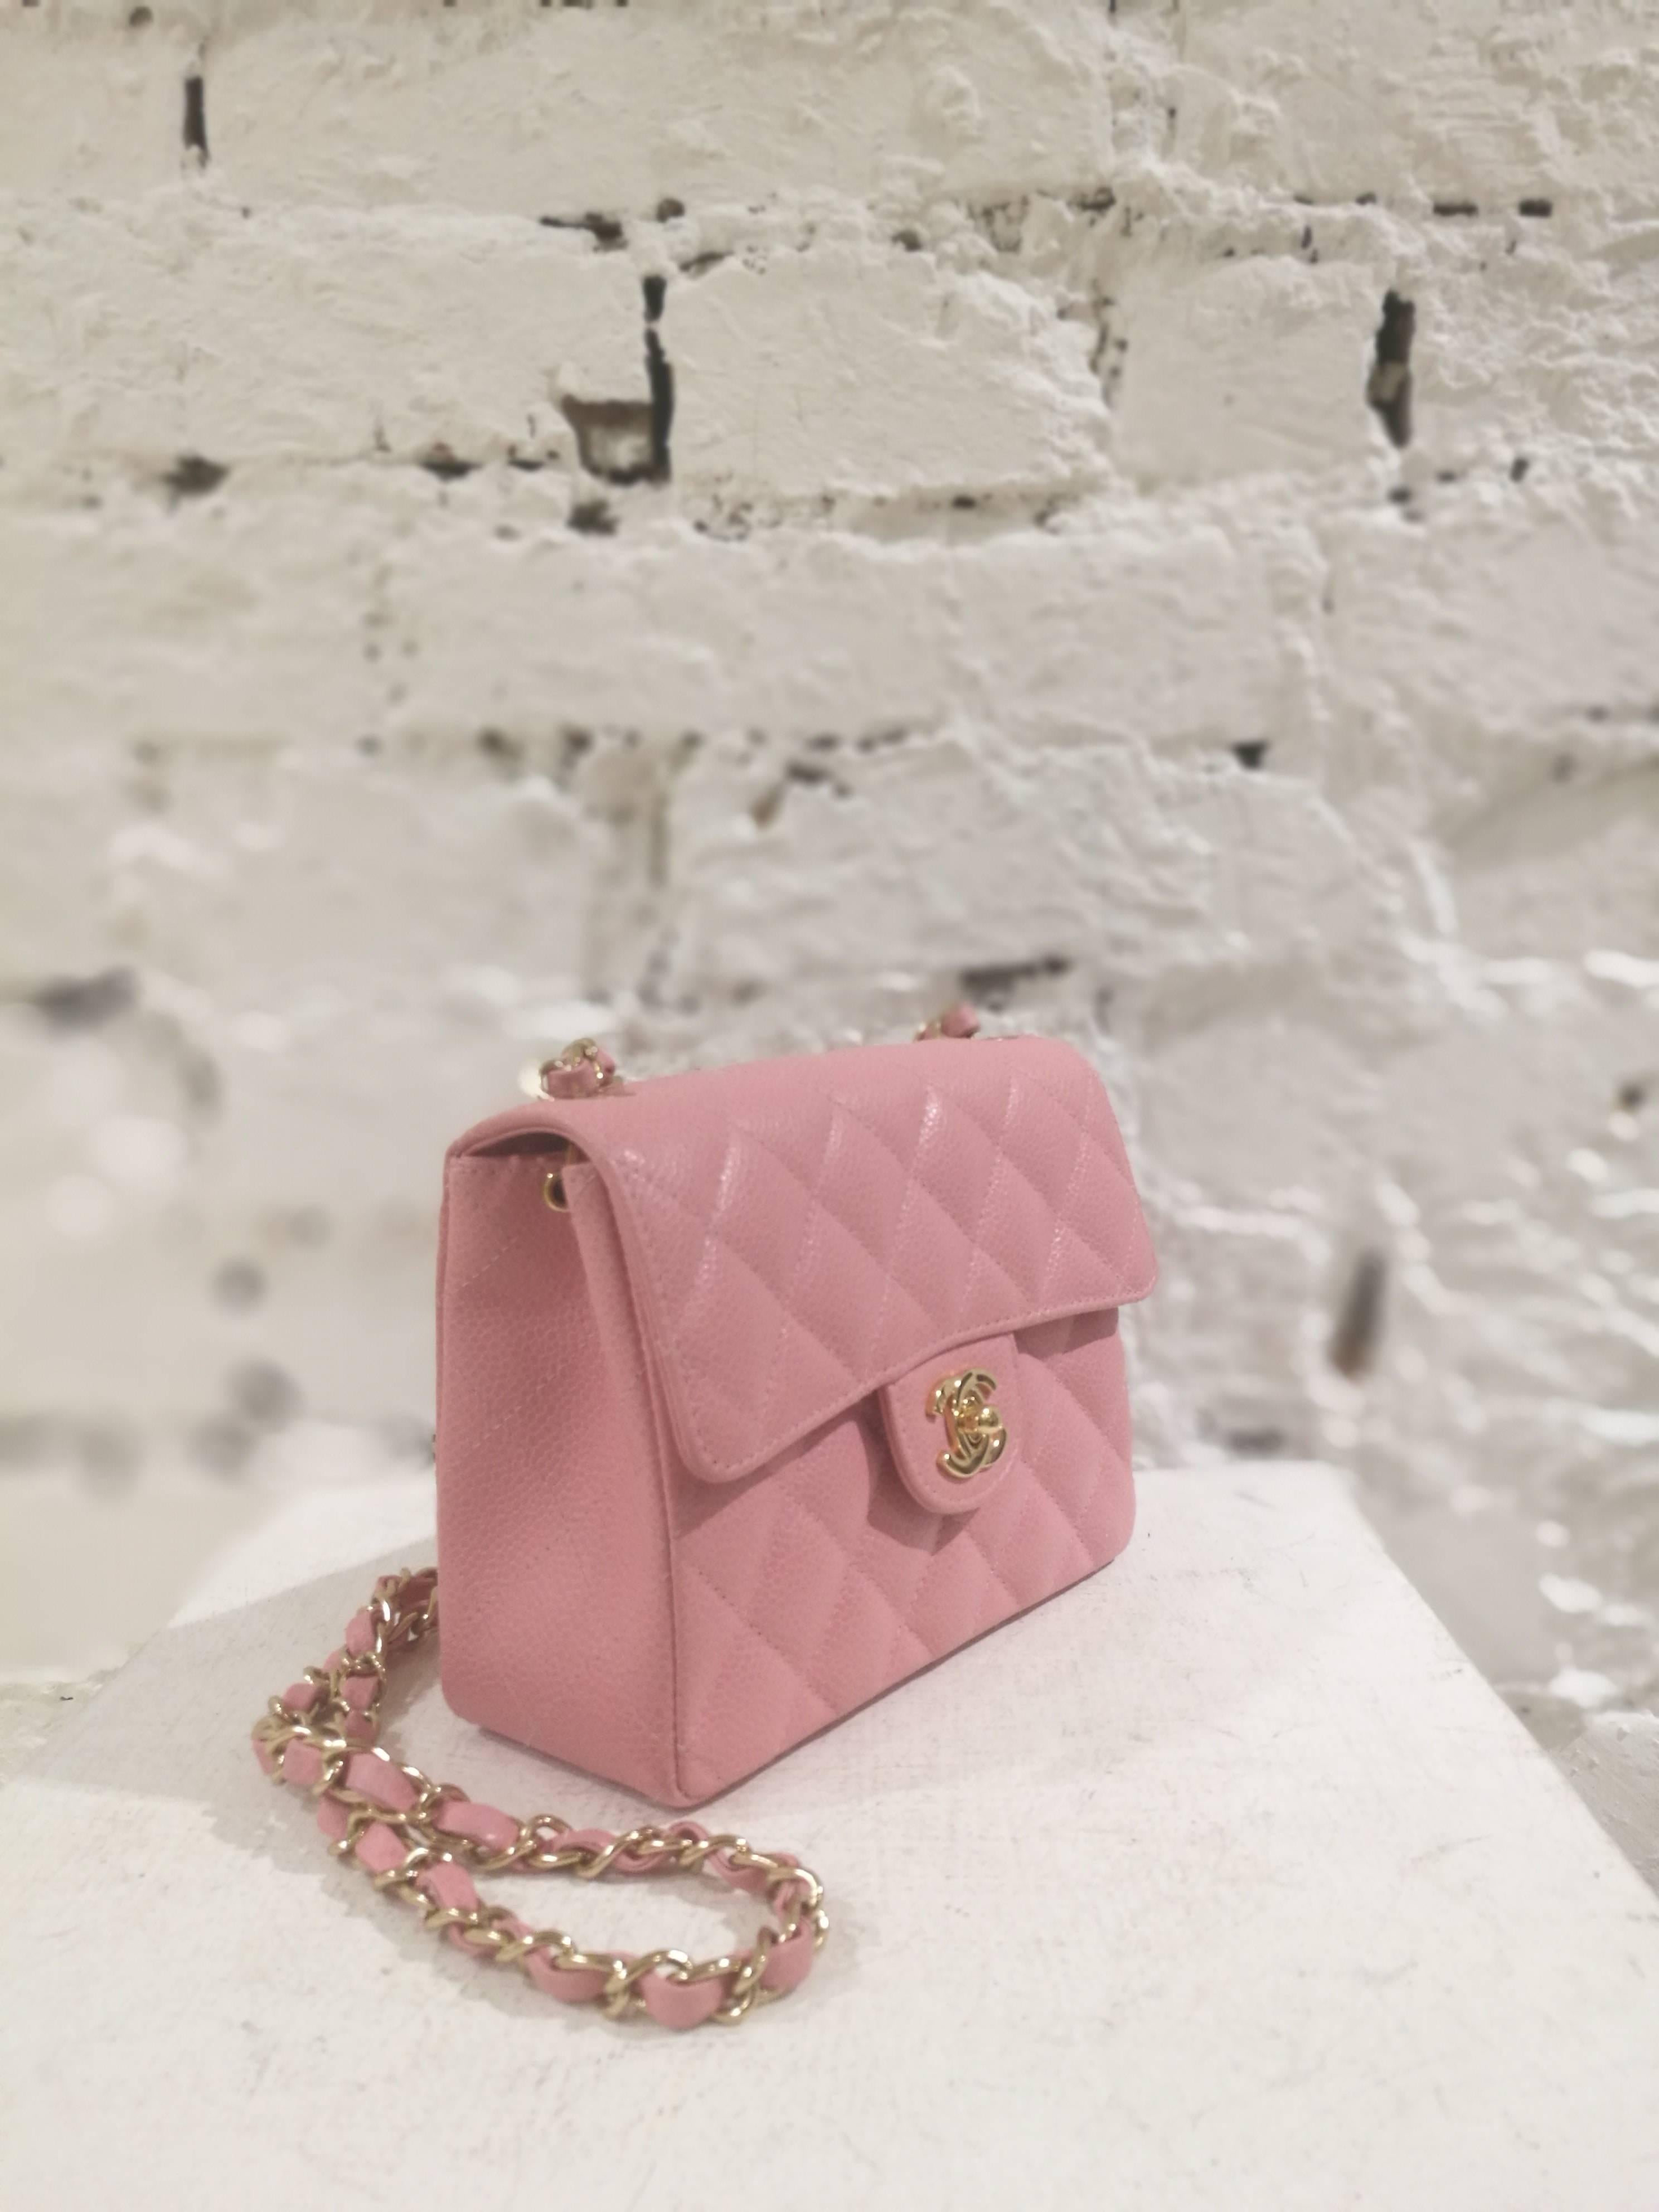 Chanel pink caviar leather shoulder bag
gold tone hardware